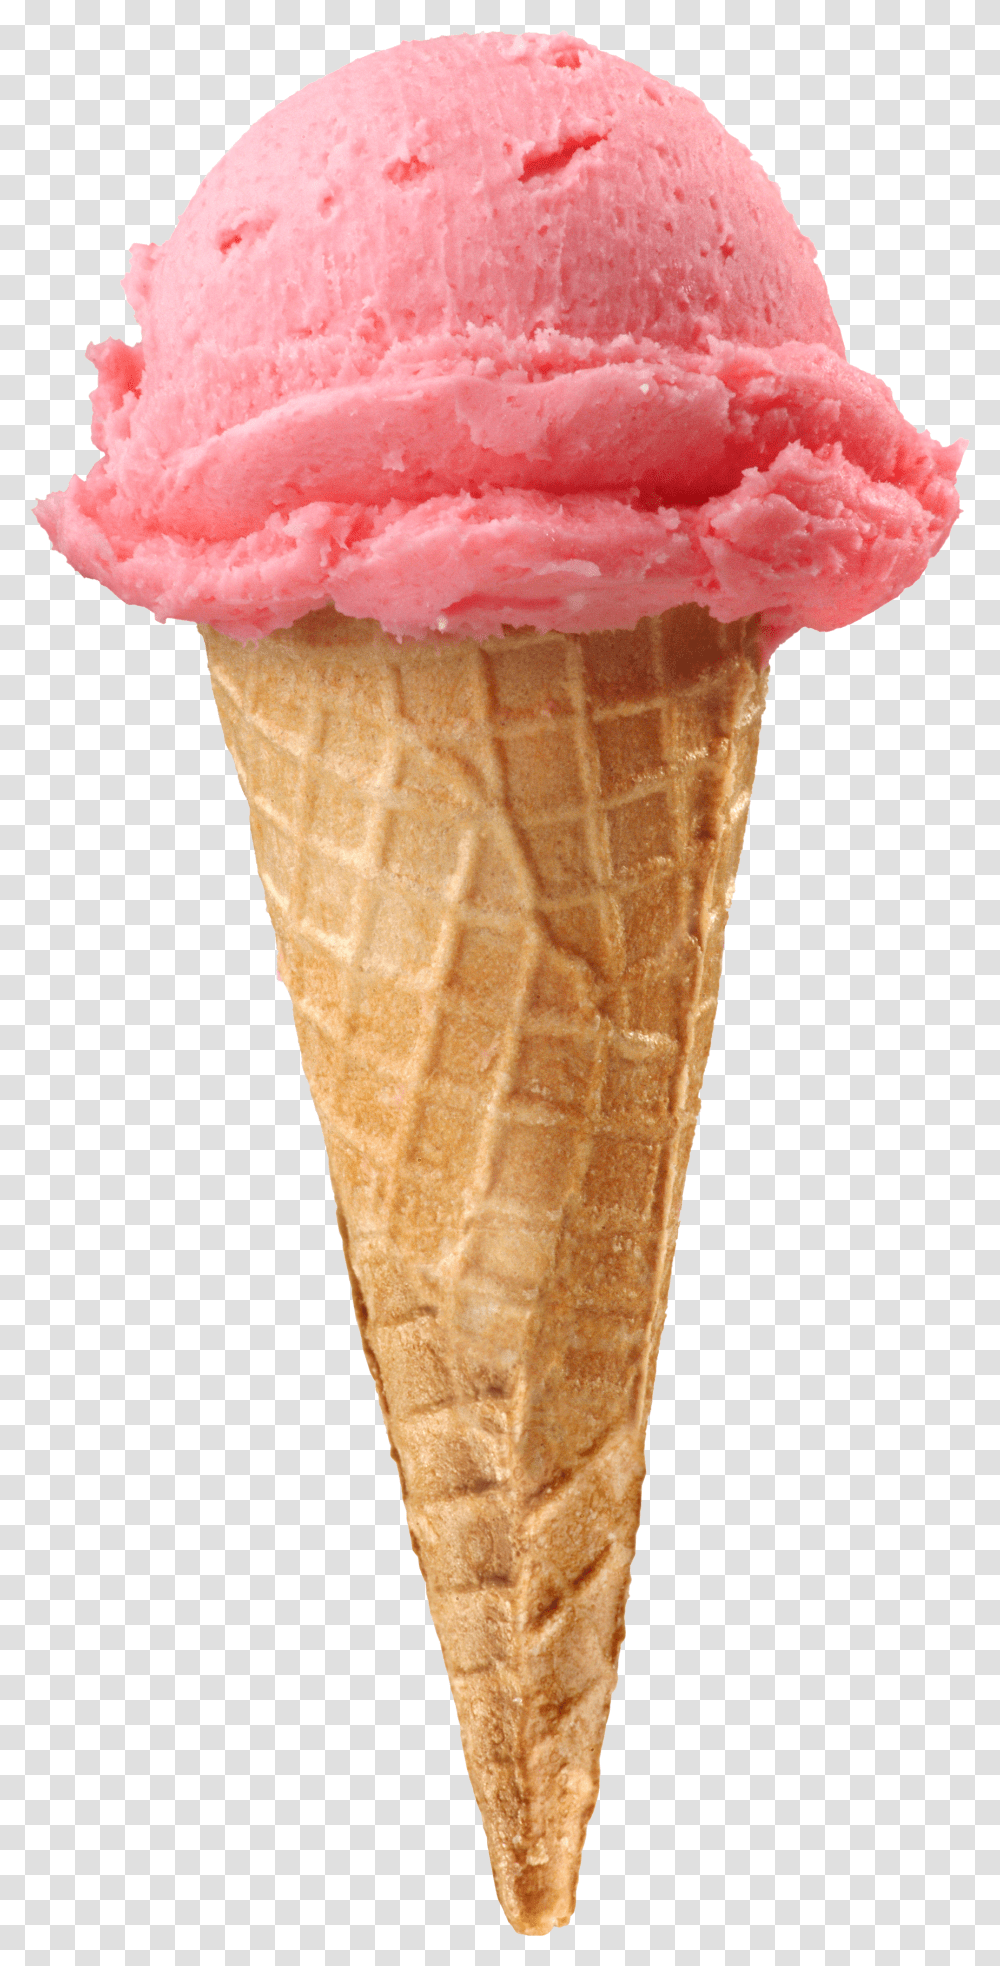 Fruit Ice Cream Image One Ice Cream Cone Transparent Png